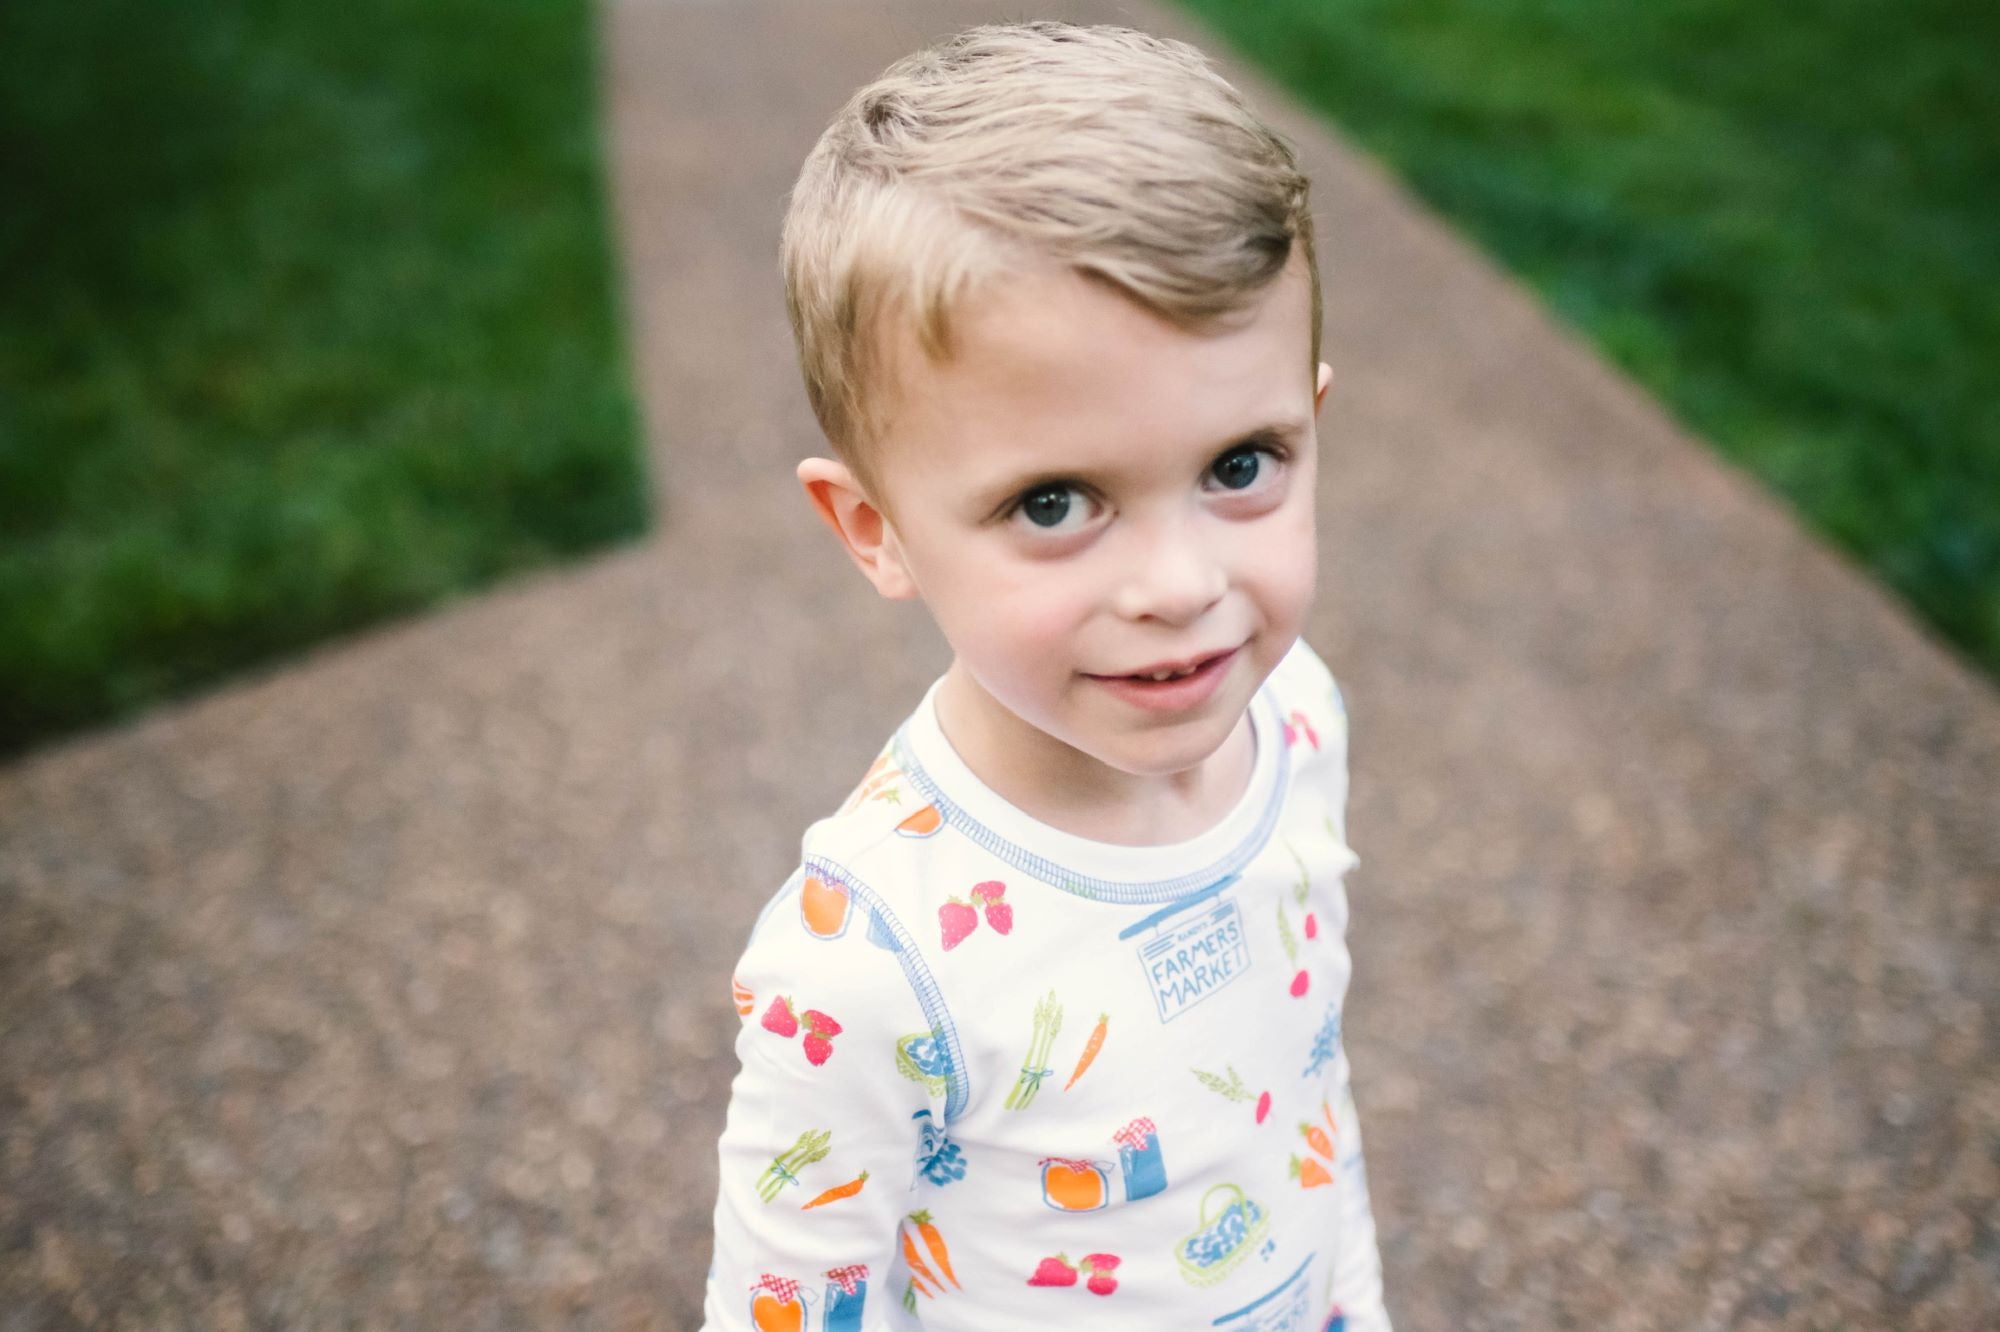 Little Boy Wearing Heyward House Farmer's Market Pajama Set Outside with Details